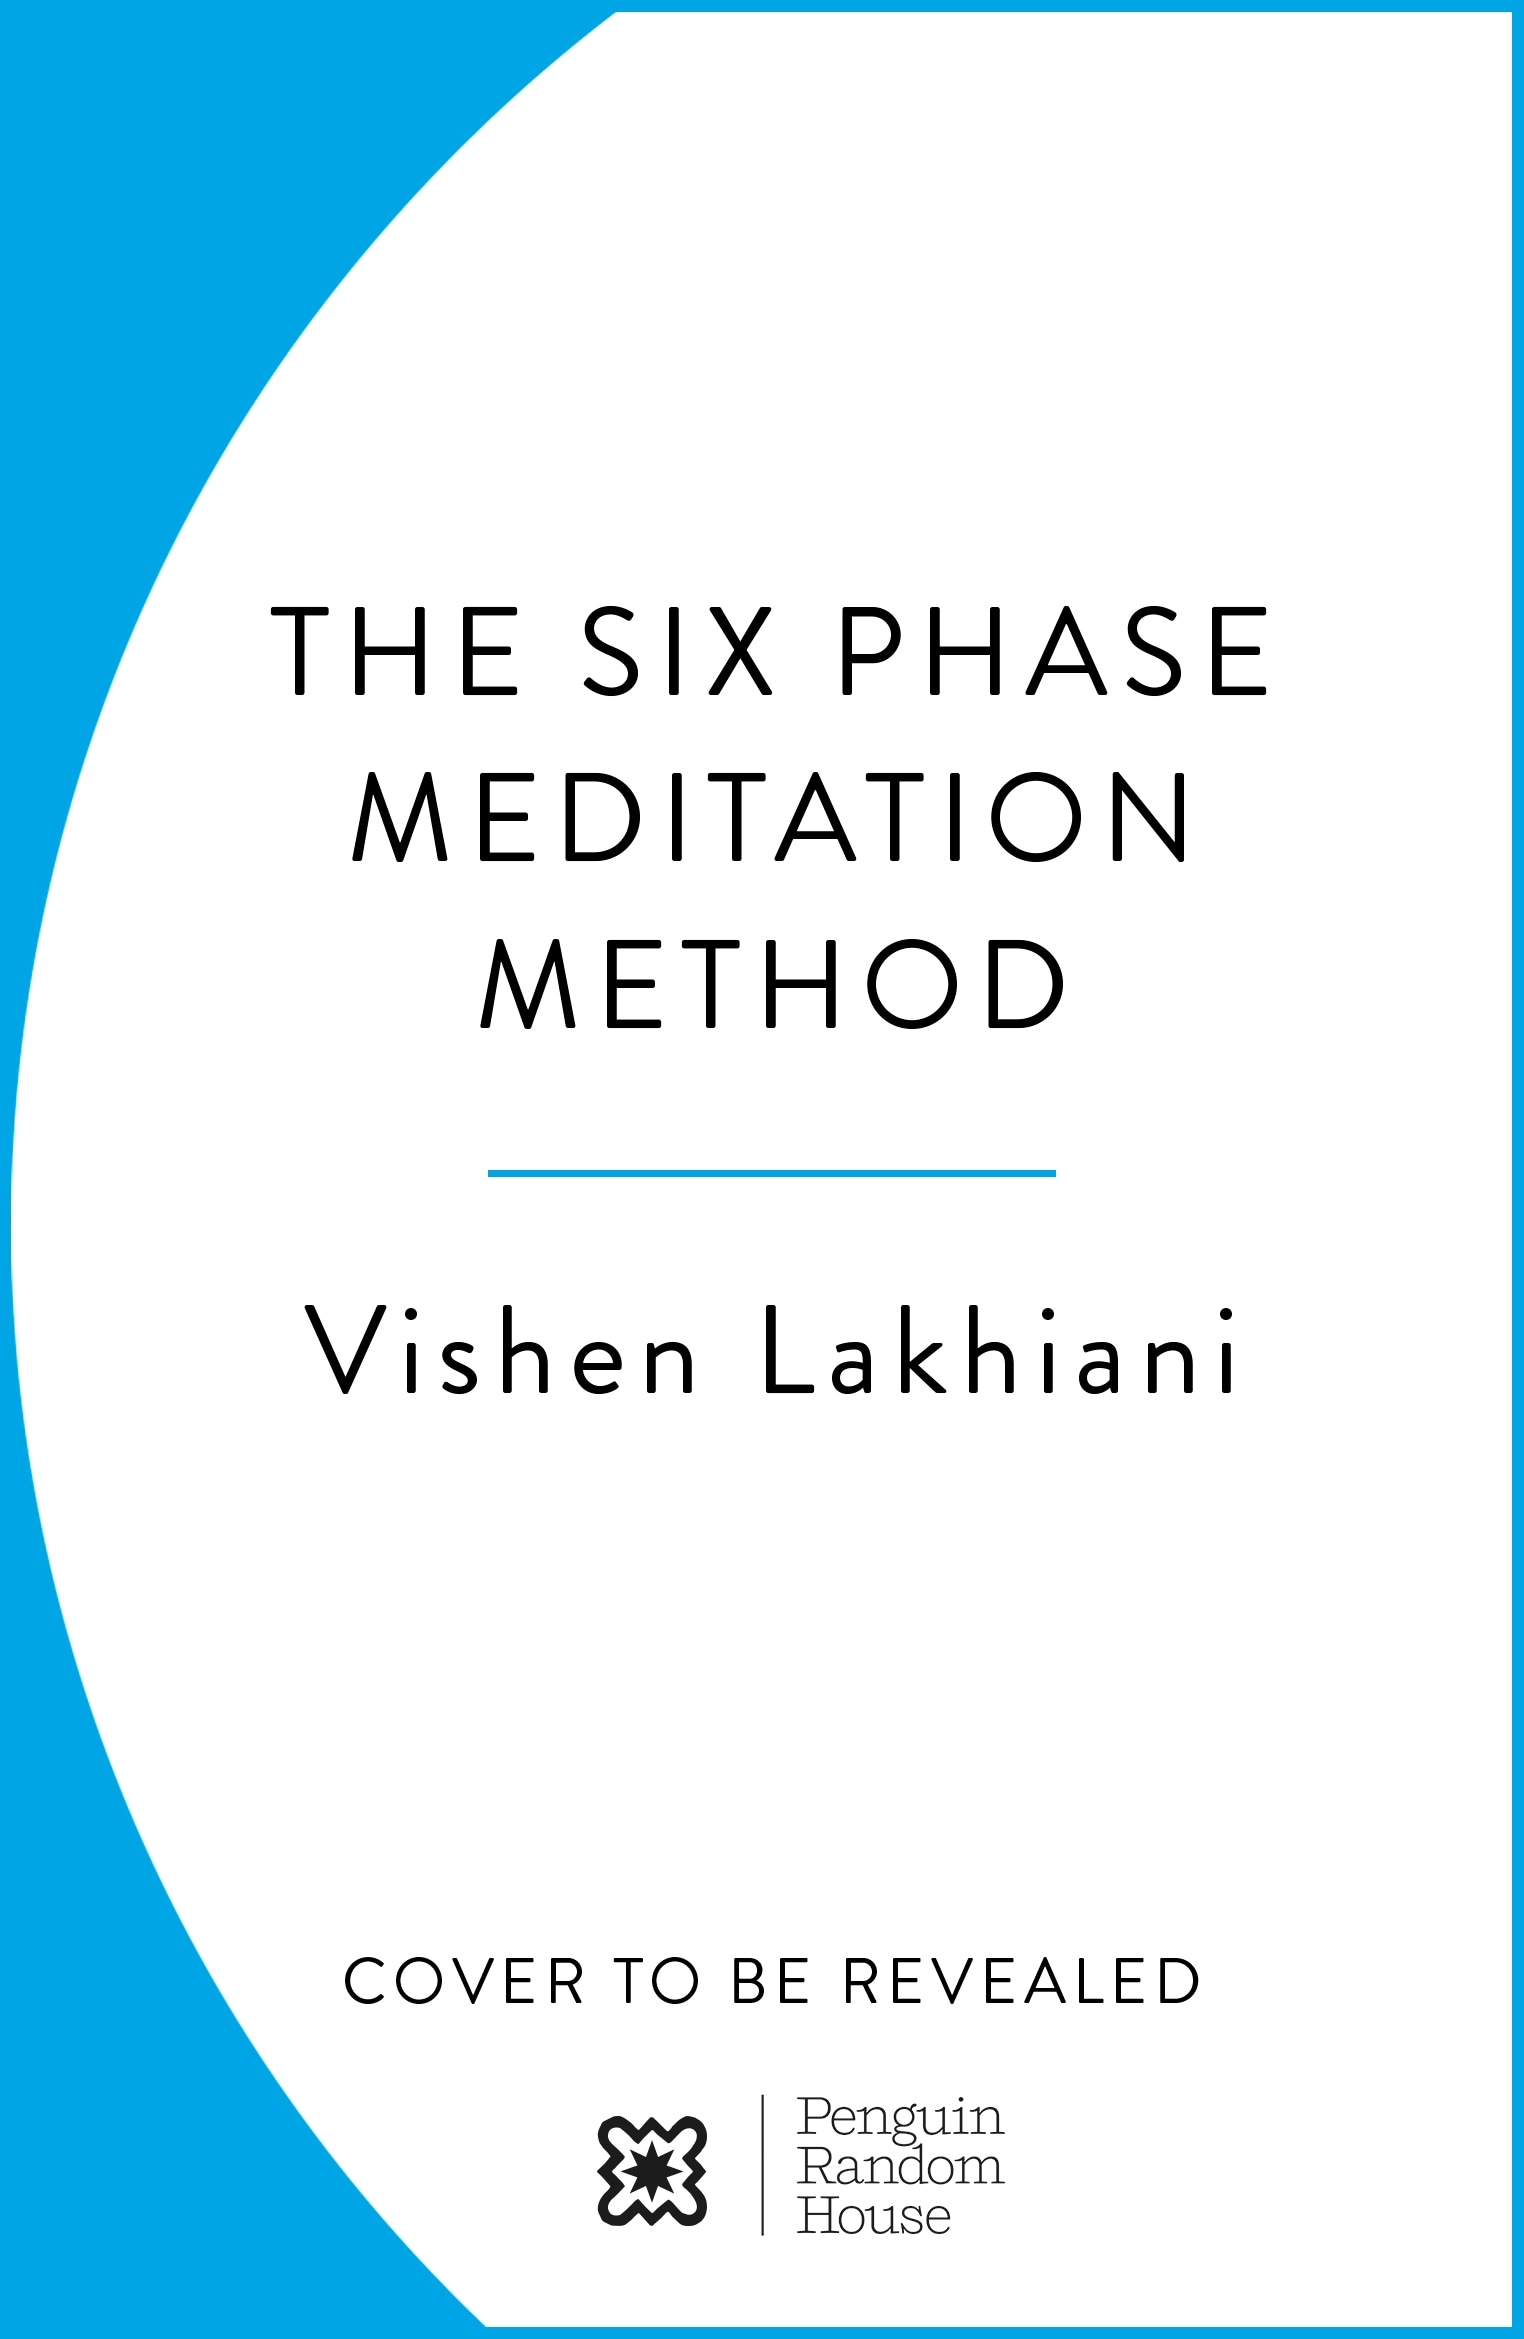 The Six Phase Meditation Method